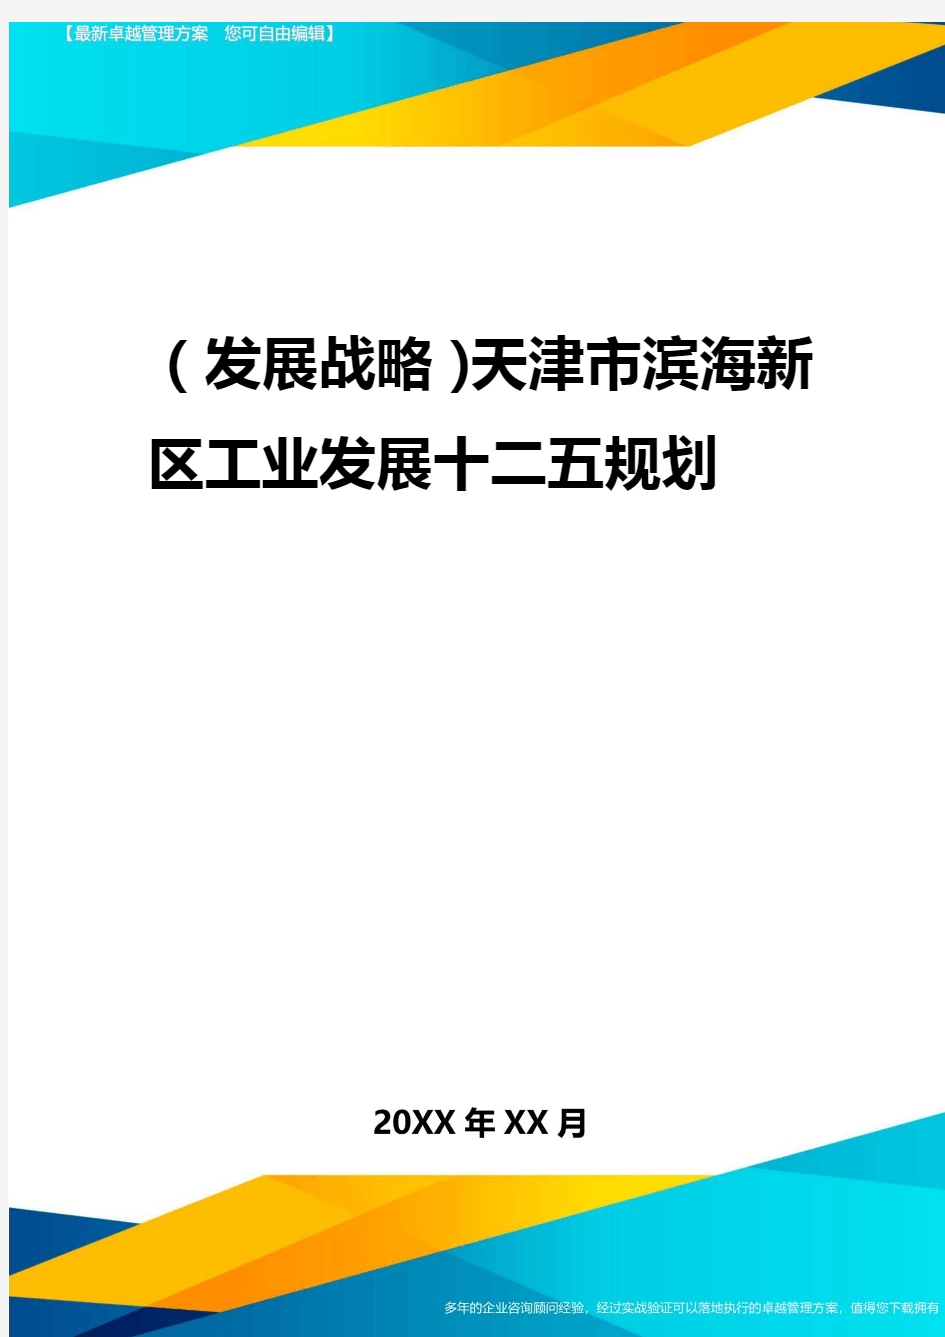 2020年(发展战略)天津市滨海新区工业发展十二五规划